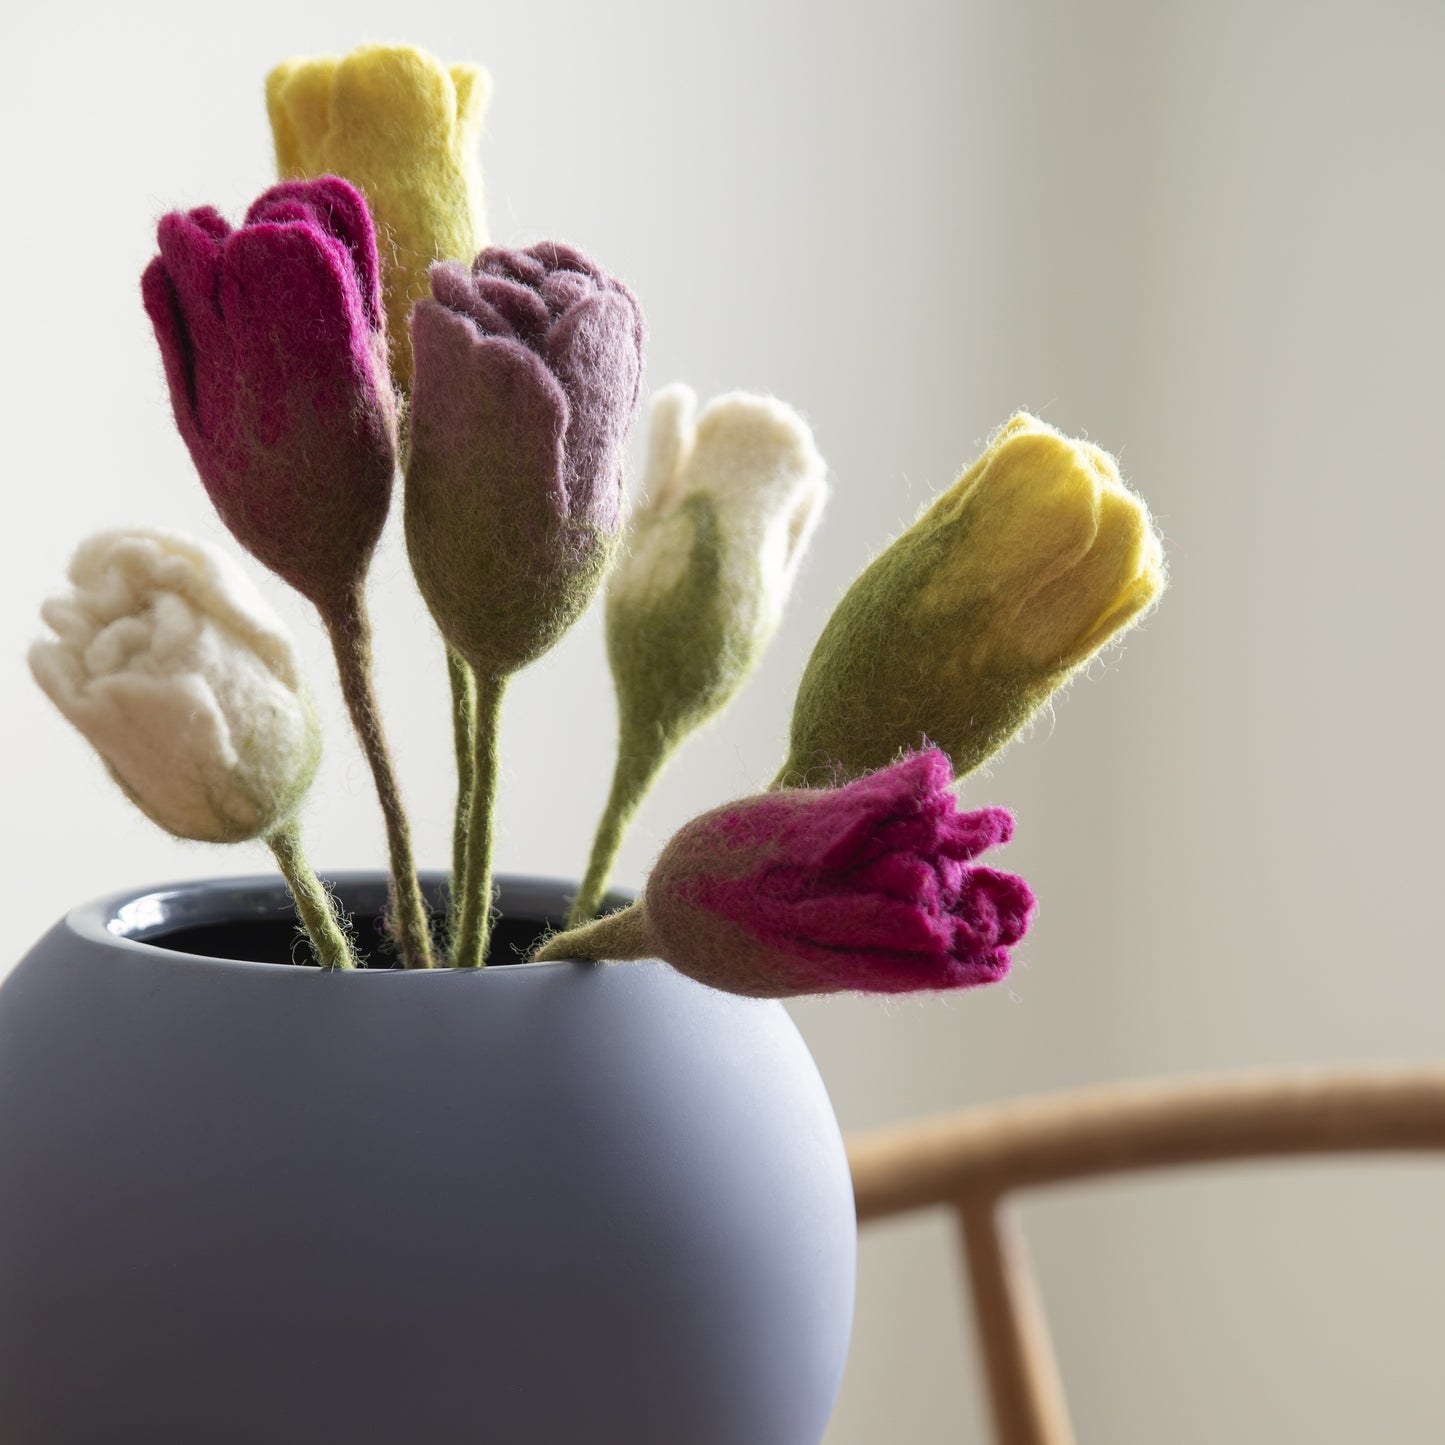 Gry & Sif - Tulipan, hvid